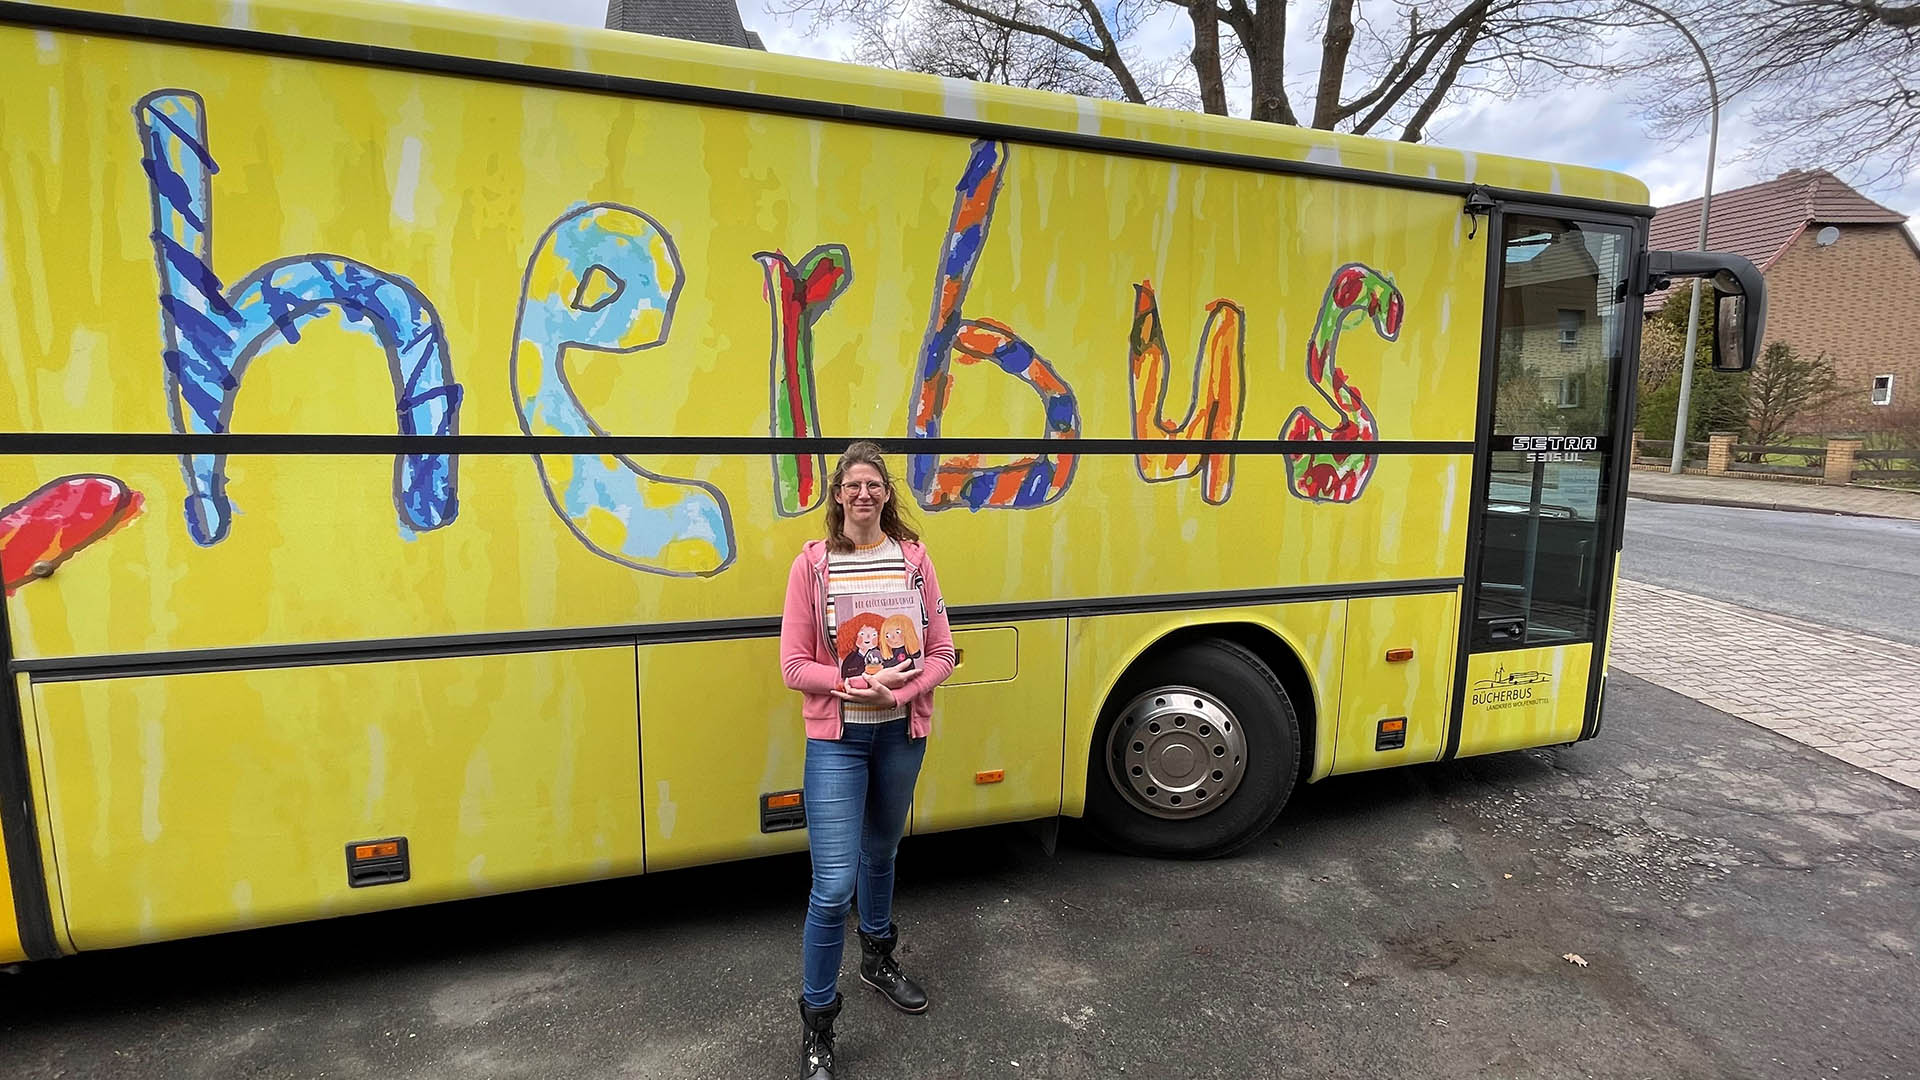 Eine Frau steht mit einem Buch in den Händen vor einem gelben Bus, auf dem noch ein Teil des Wortes "Bücherbus" zu lesen ist